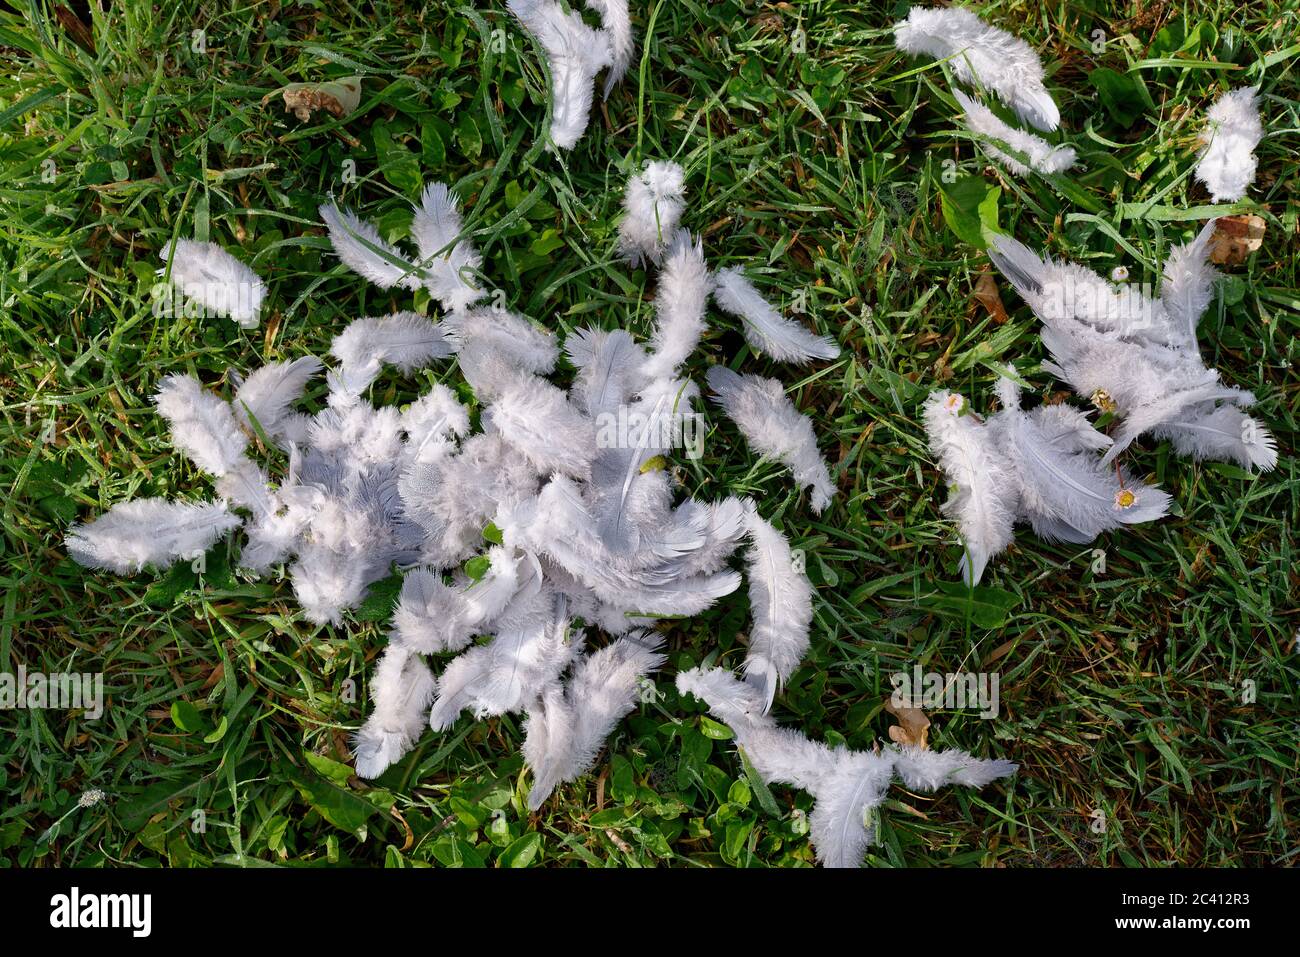 Un désordre de plumes de jeunes oiseaux (pigeon) sur l'herbe après une attaque par un prédateur. L'oiseau s'est échappé et a survécu, mais a perdu ces plumes en conséquence. Banque D'Images